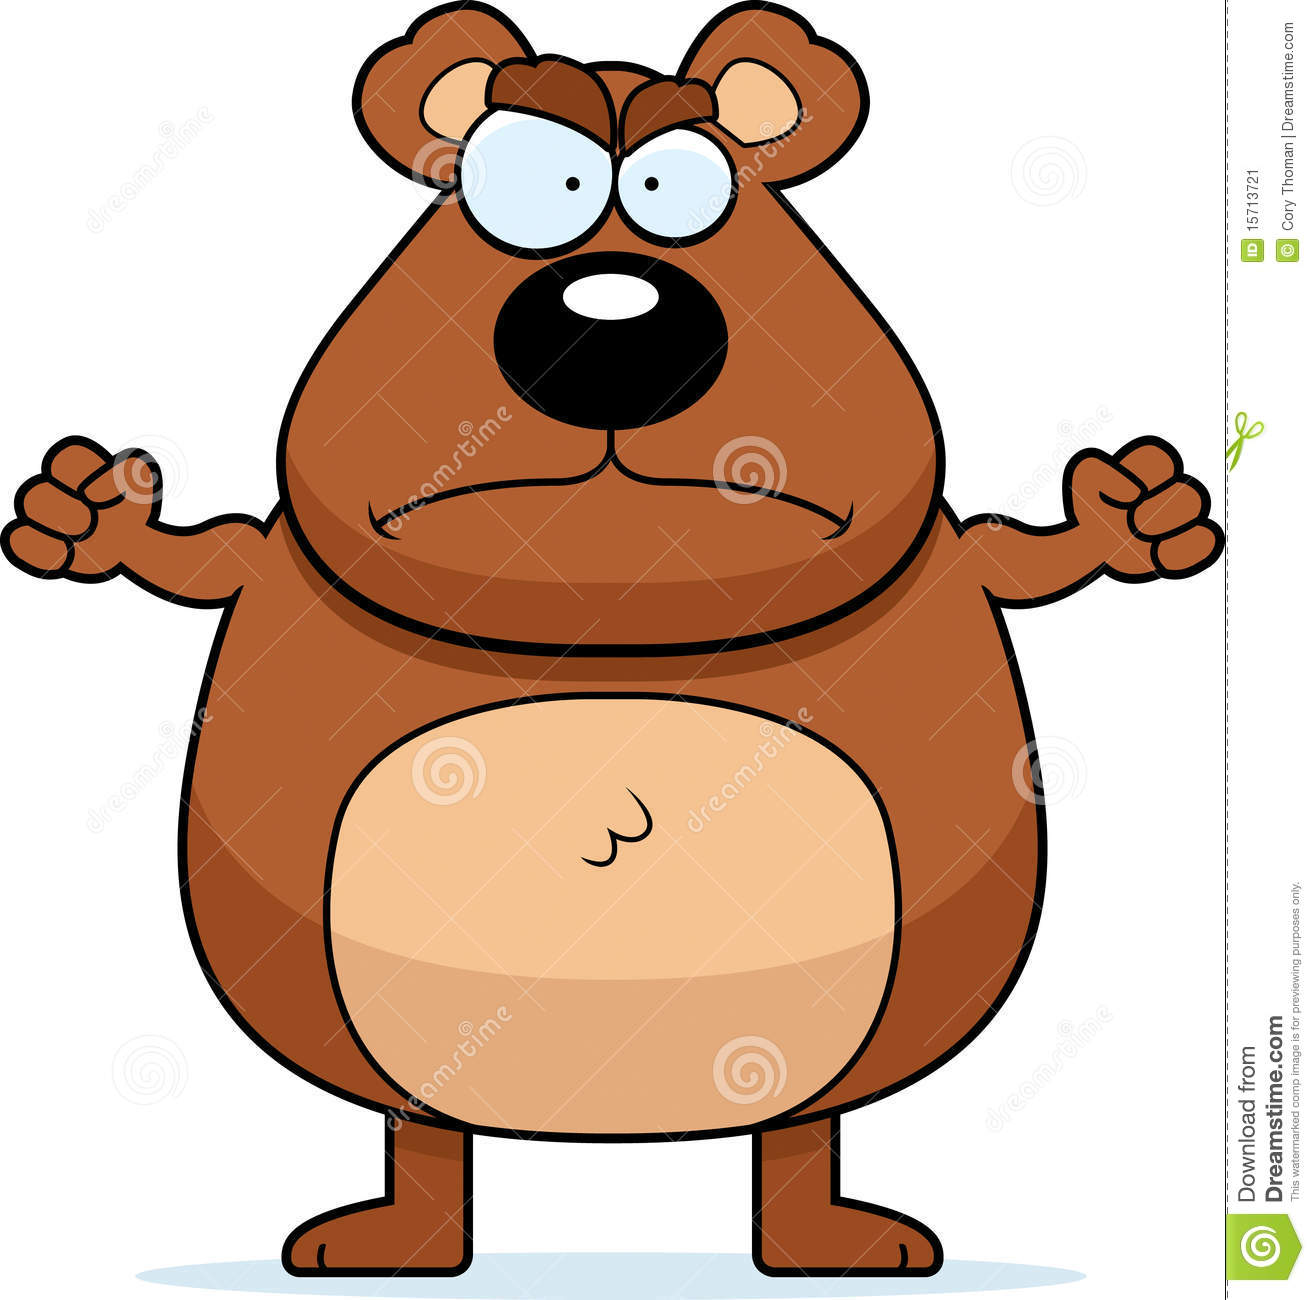 Angry Bear Stock Image   Image  15713721